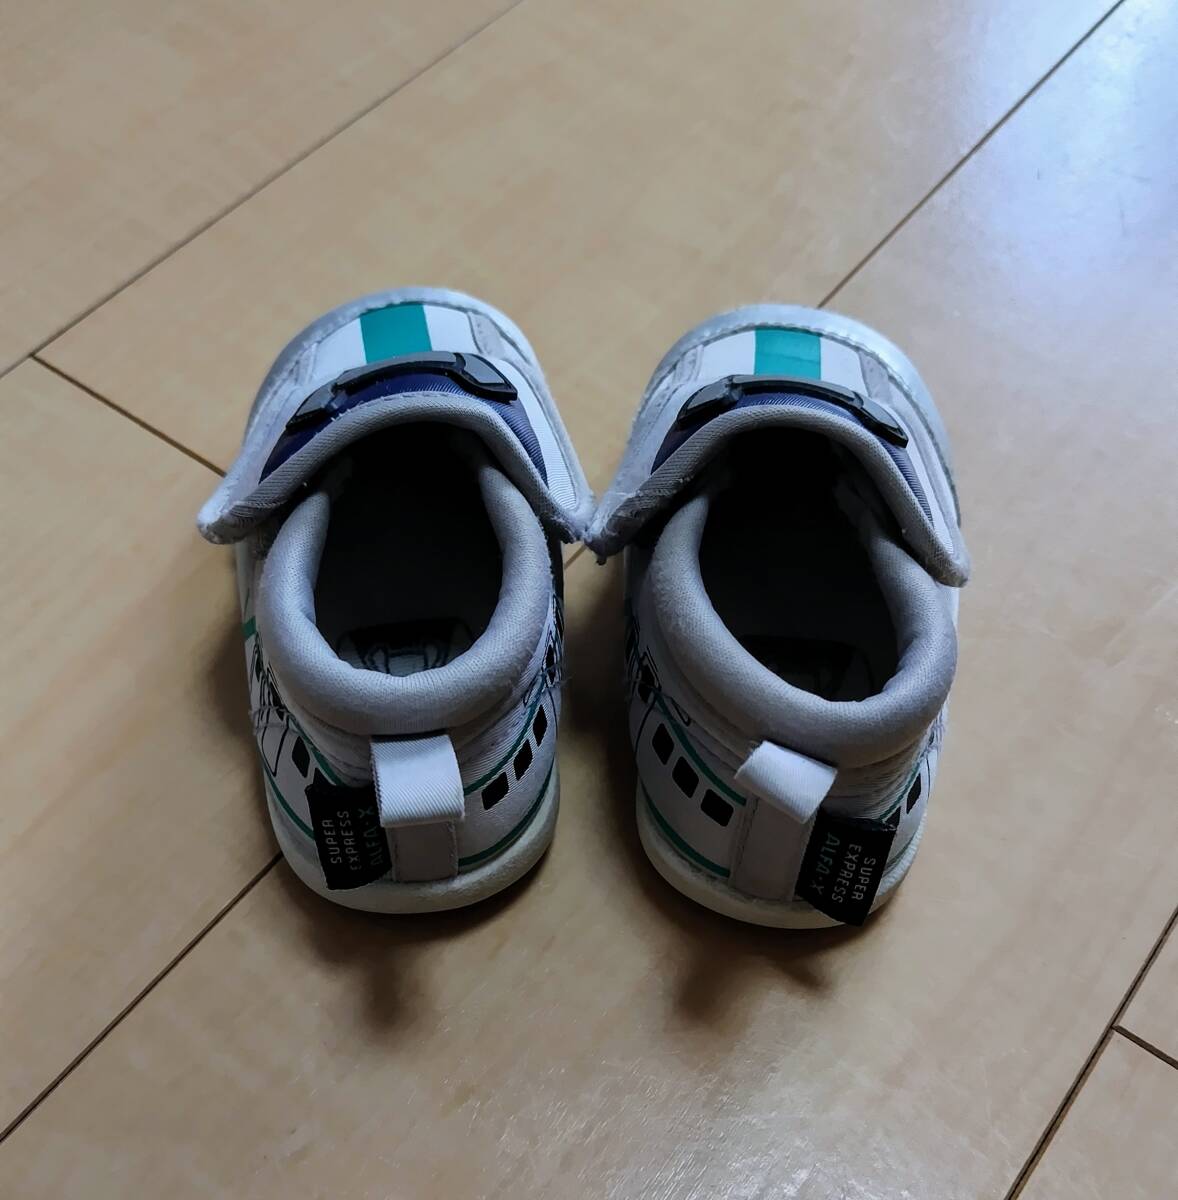  обувь спортивные туфли Kids Shinkansen электропоезд 15cm